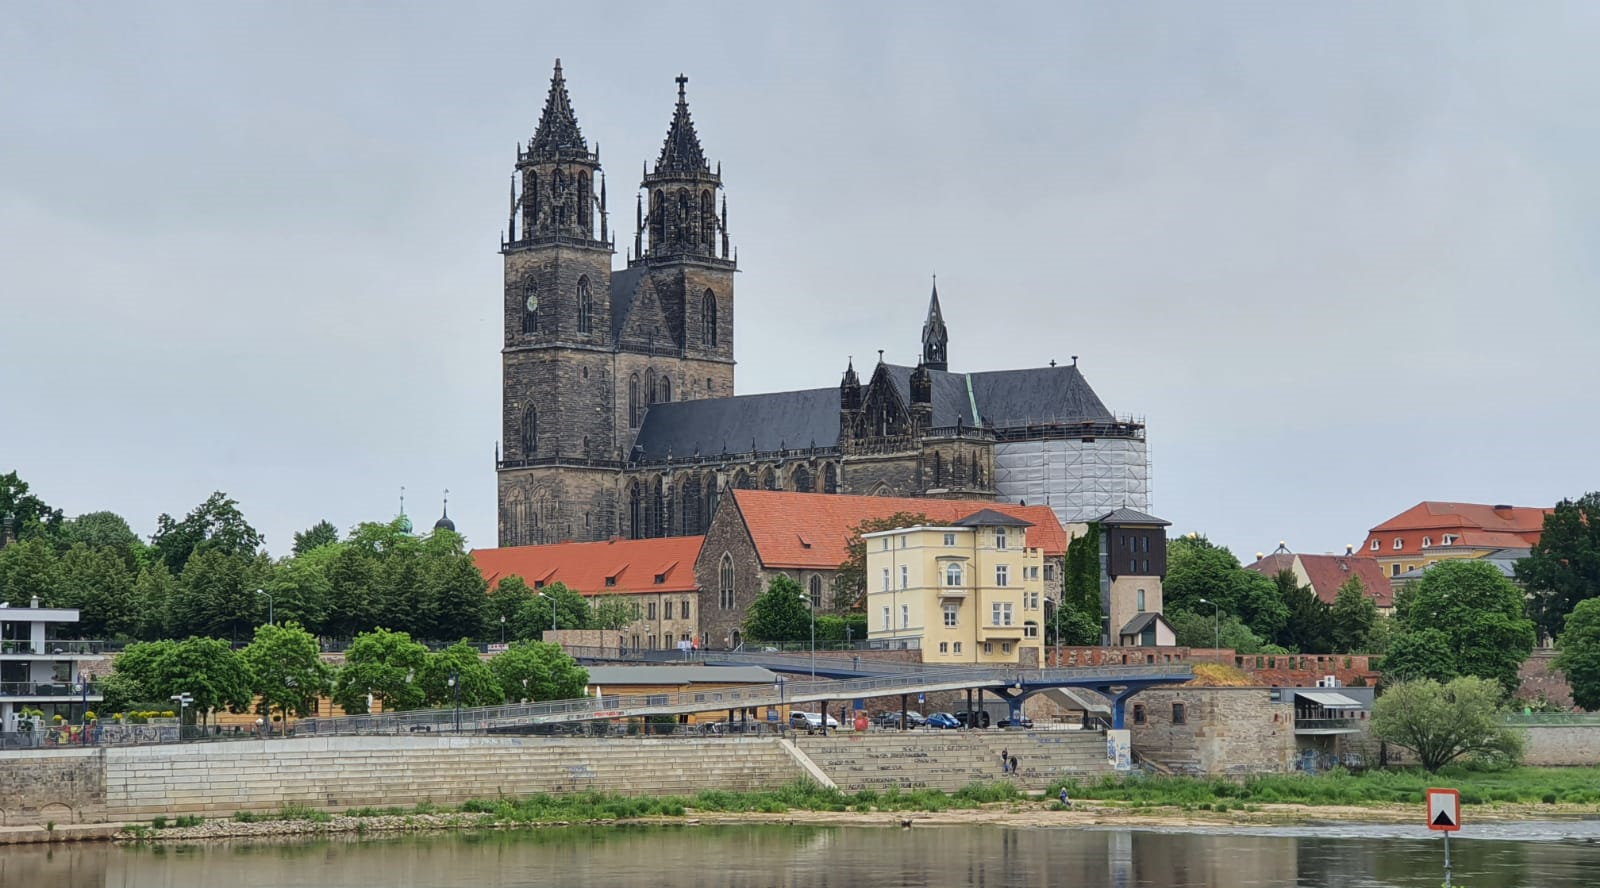 Chemnitz besiegt Magdeburg und wird europäische Kulturhauptstadt 2025